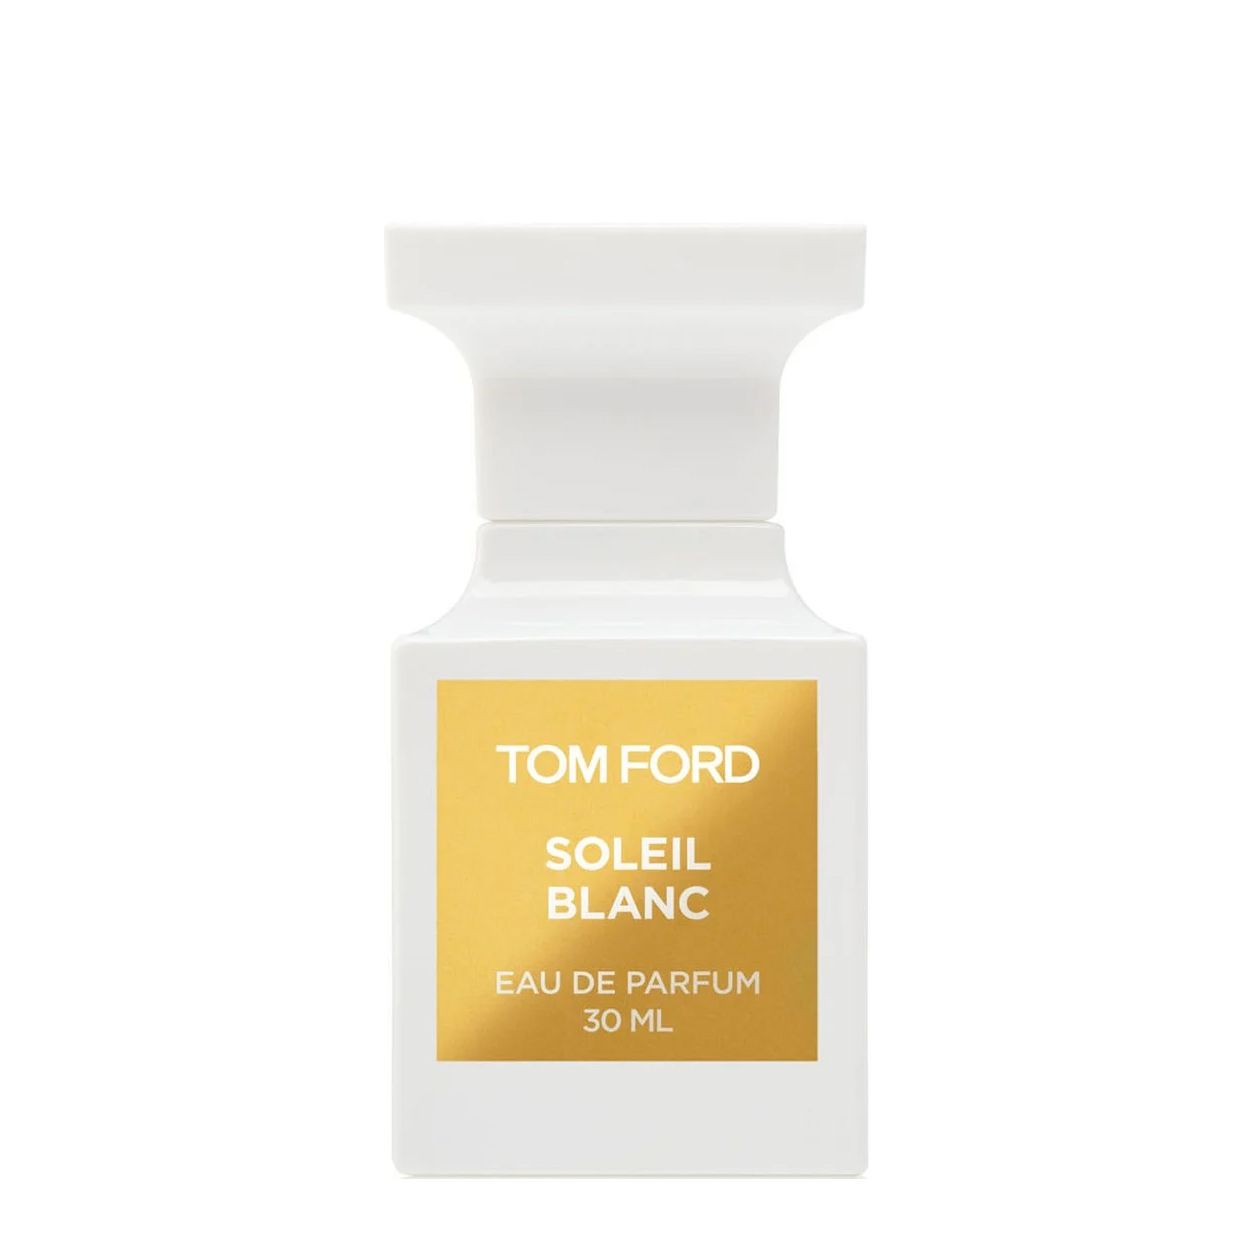 Вода парфюмерная Tom Ford Soleil Blanc, унисекс, 30 мл van cleef oud blanc 75